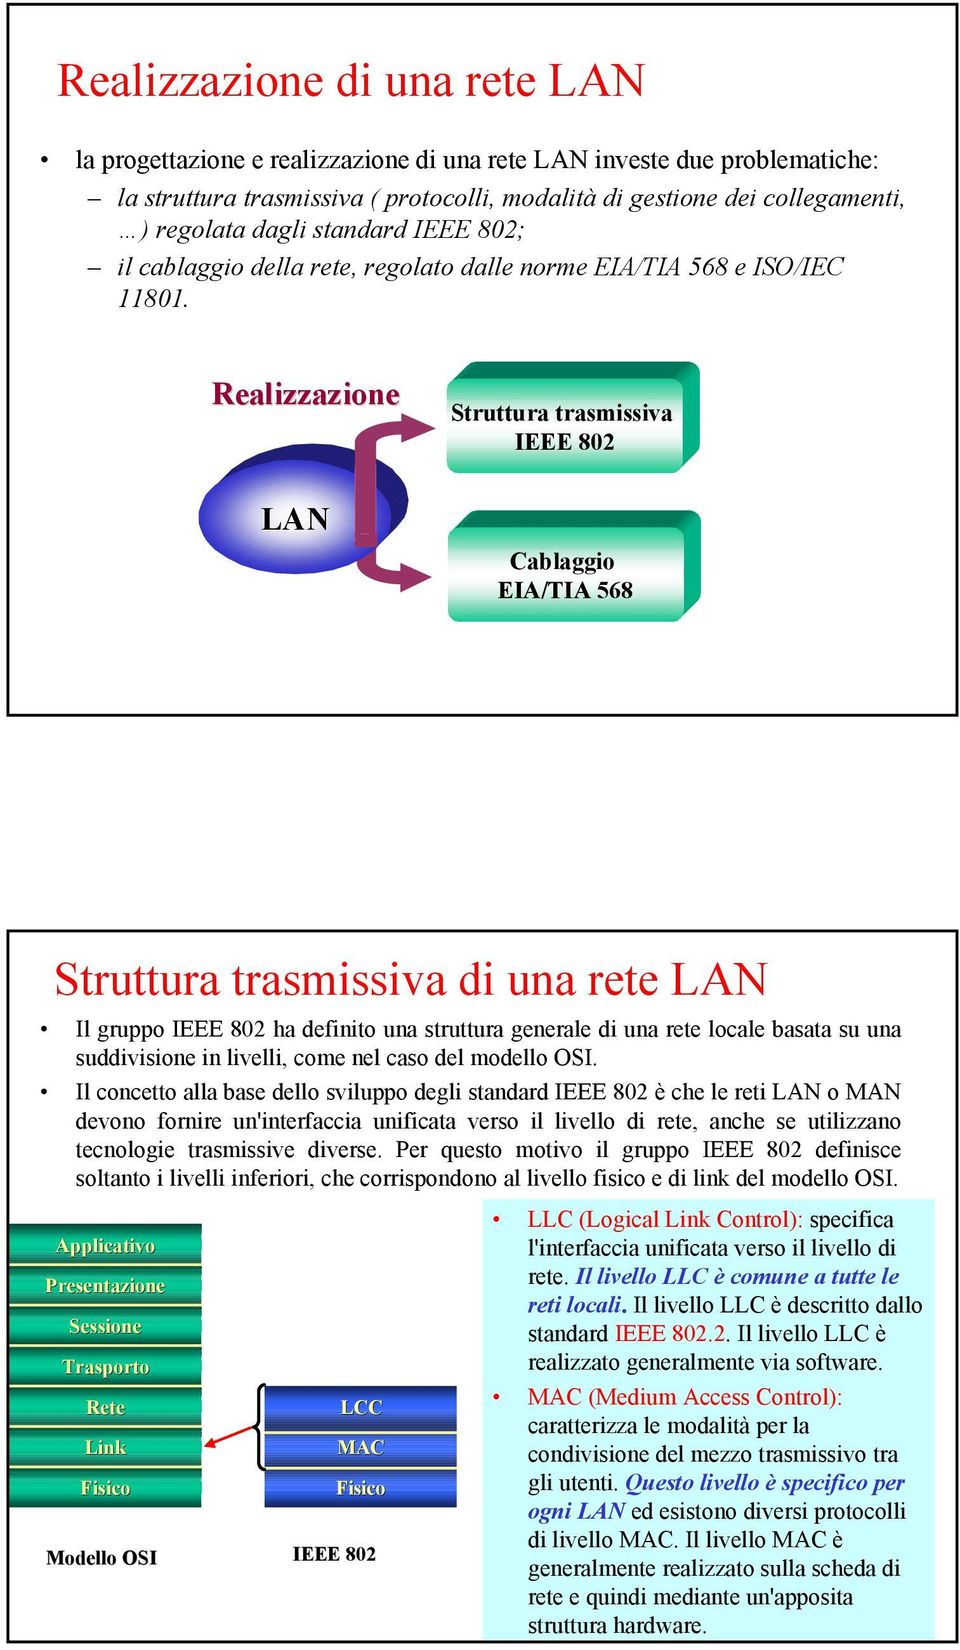 Realizzazione Struttura trasmissiva IEEE 802 LAN Cablaggio EIA/TIA 568 Struttura trasmissiva di una rete LAN Il gruppo IEEE 802 ha definito una struttura generale di una rete locale basata su una